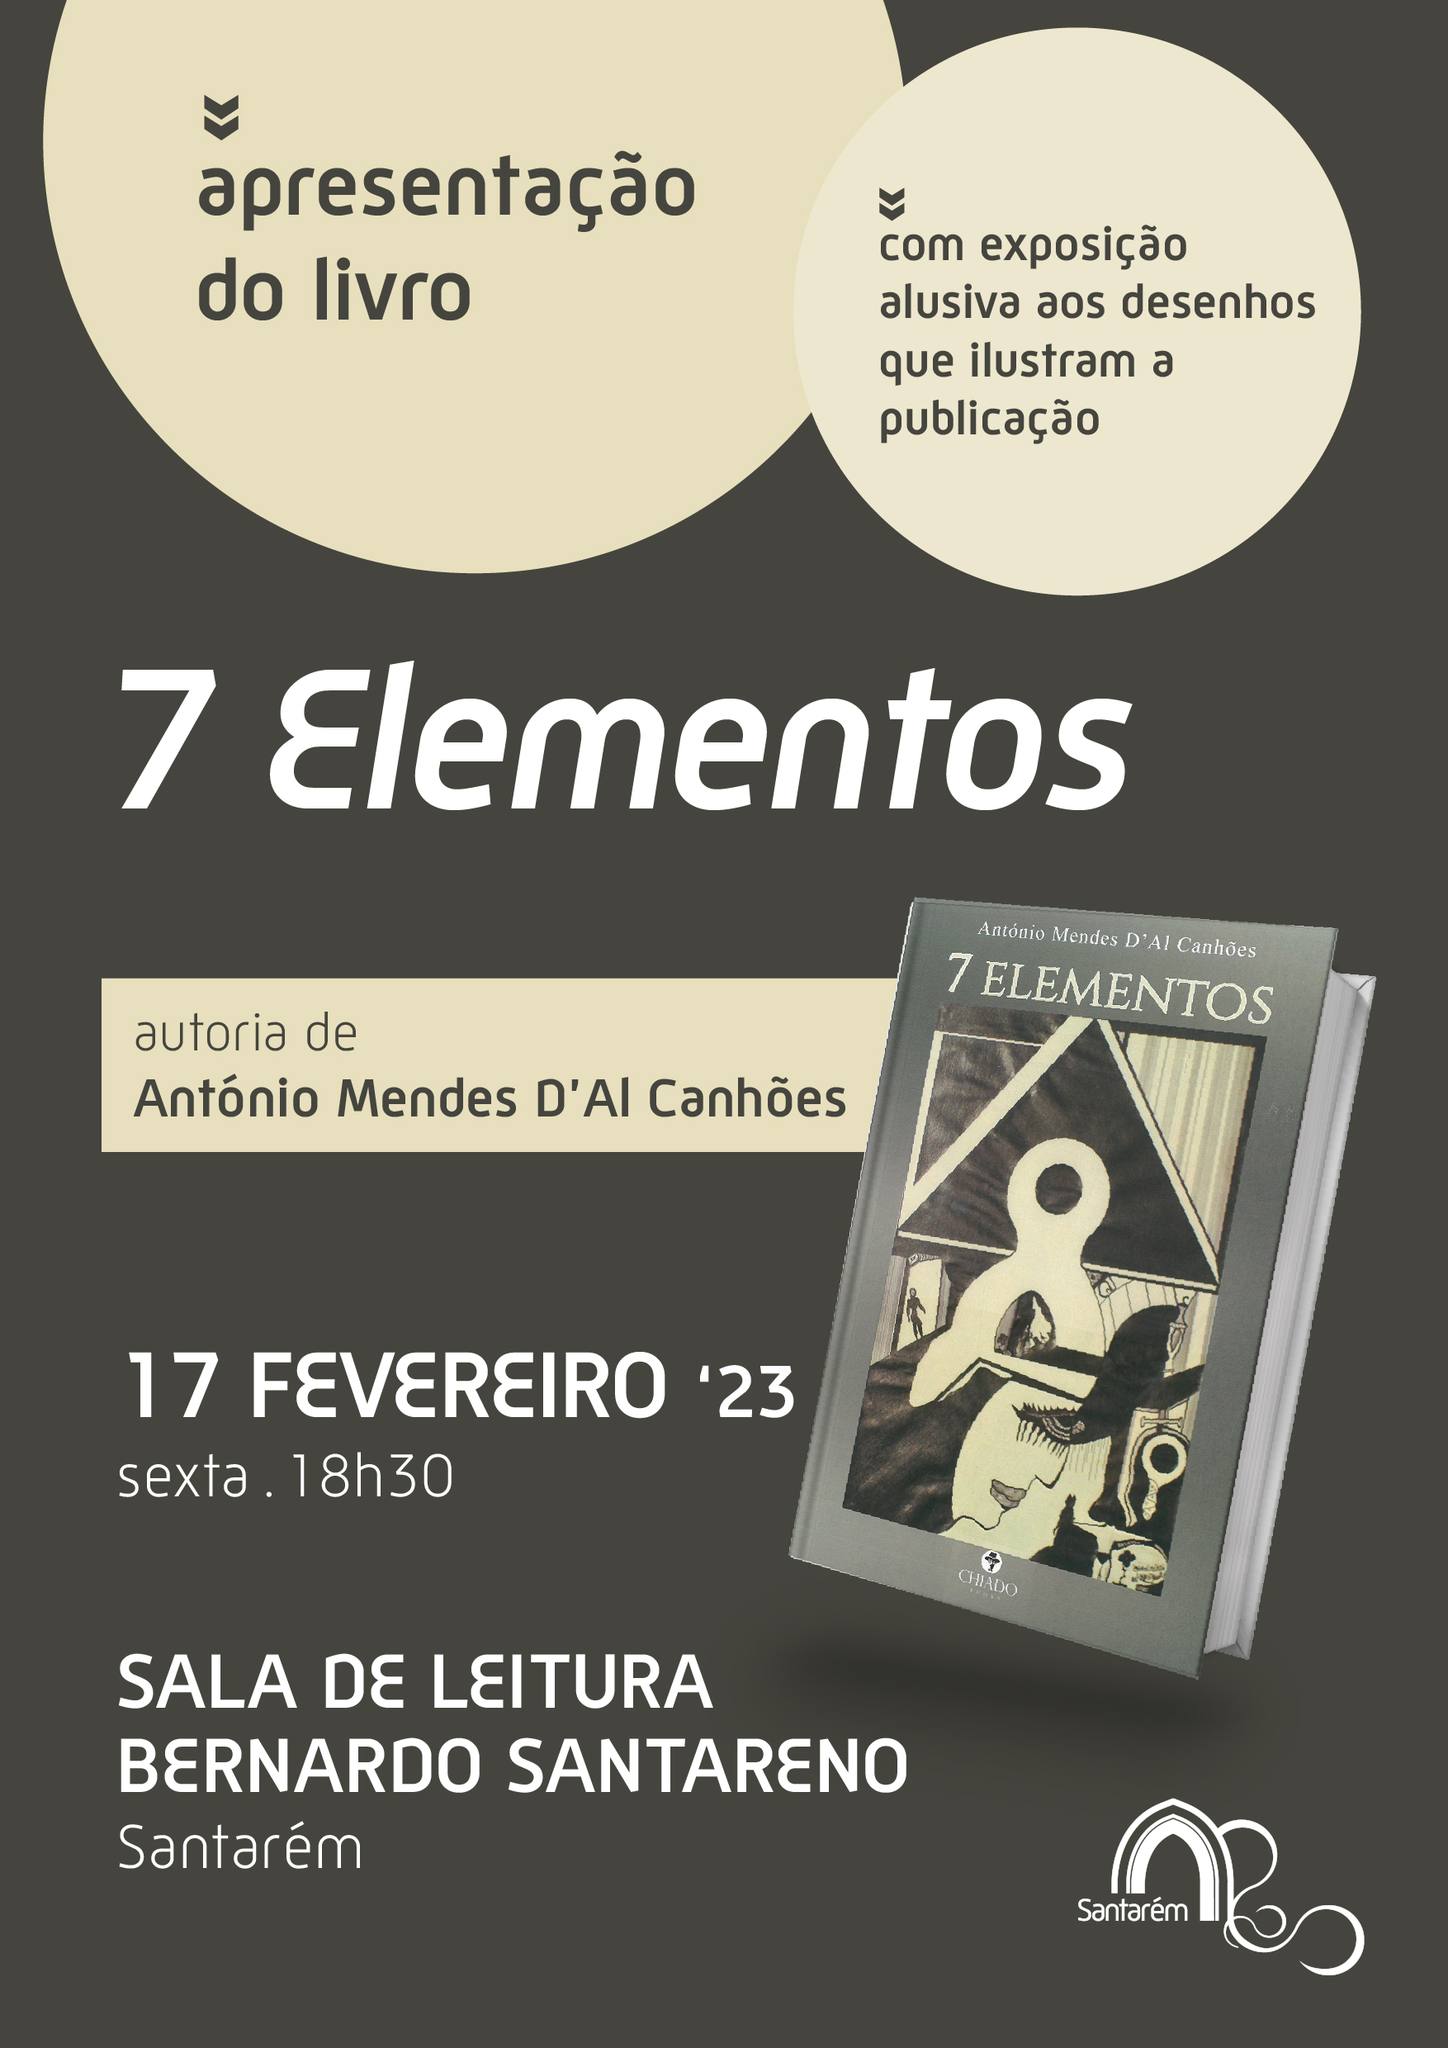 Apresentação do livro “7Elementos” de António Mendes